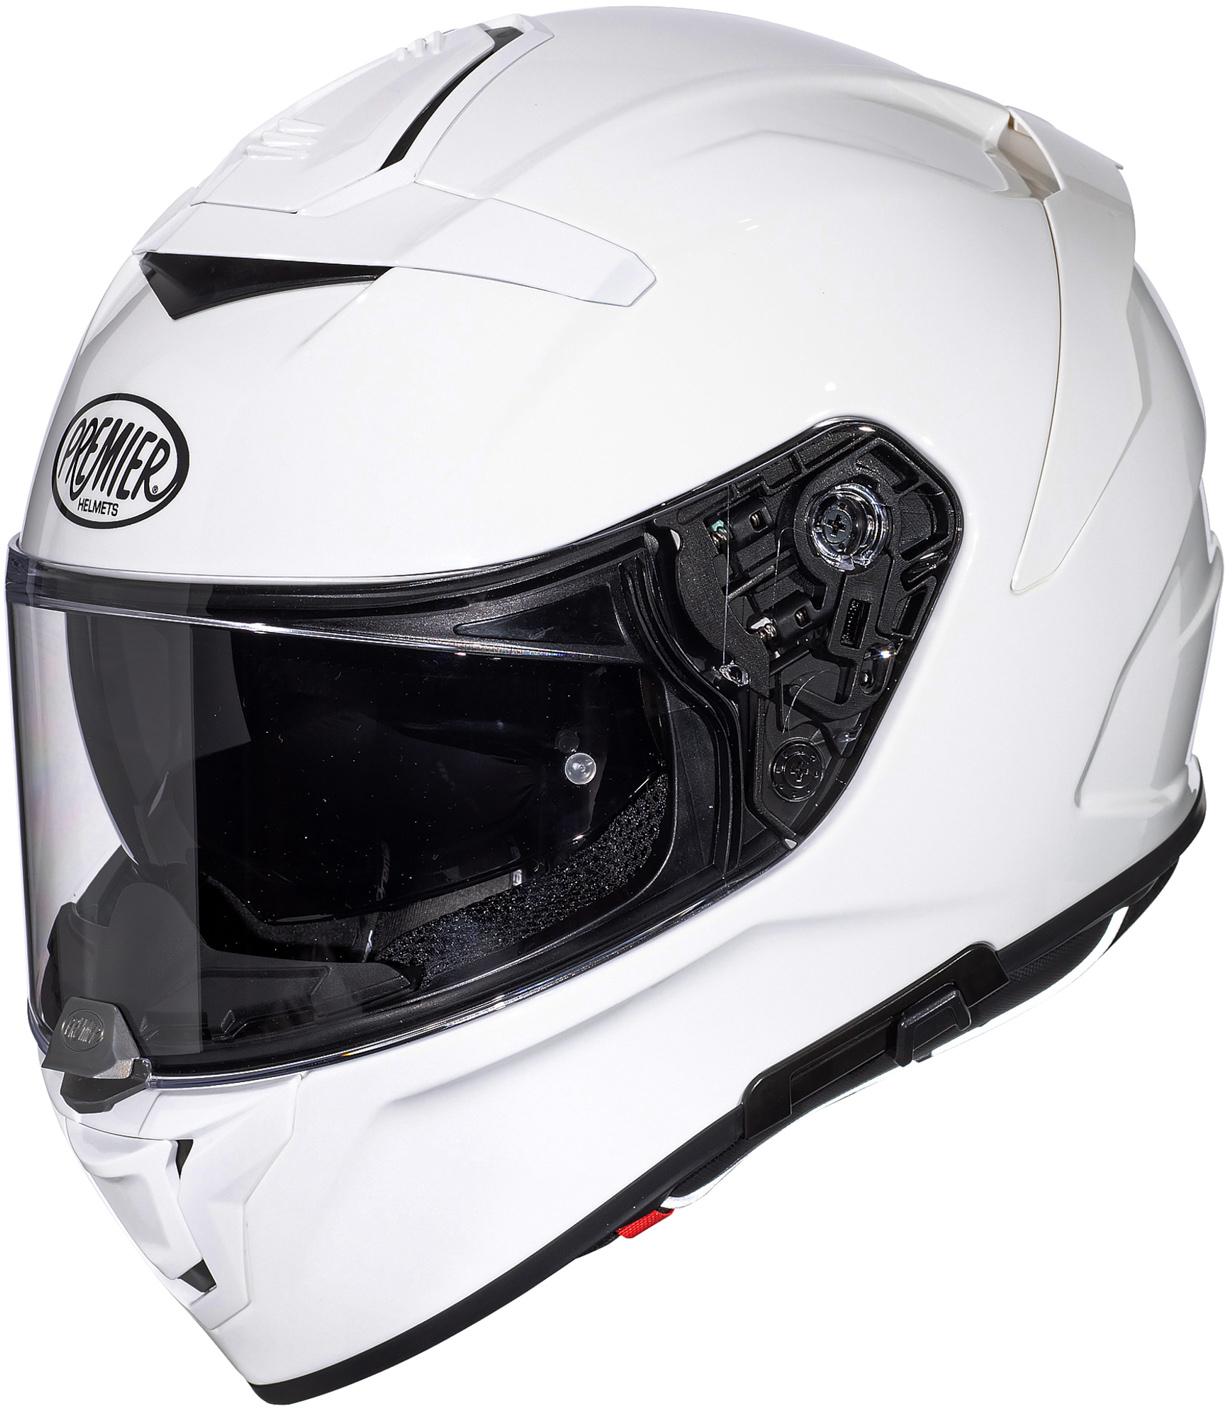 Premier Devil Full Face Motorcycle Helmet - White, 2Xl